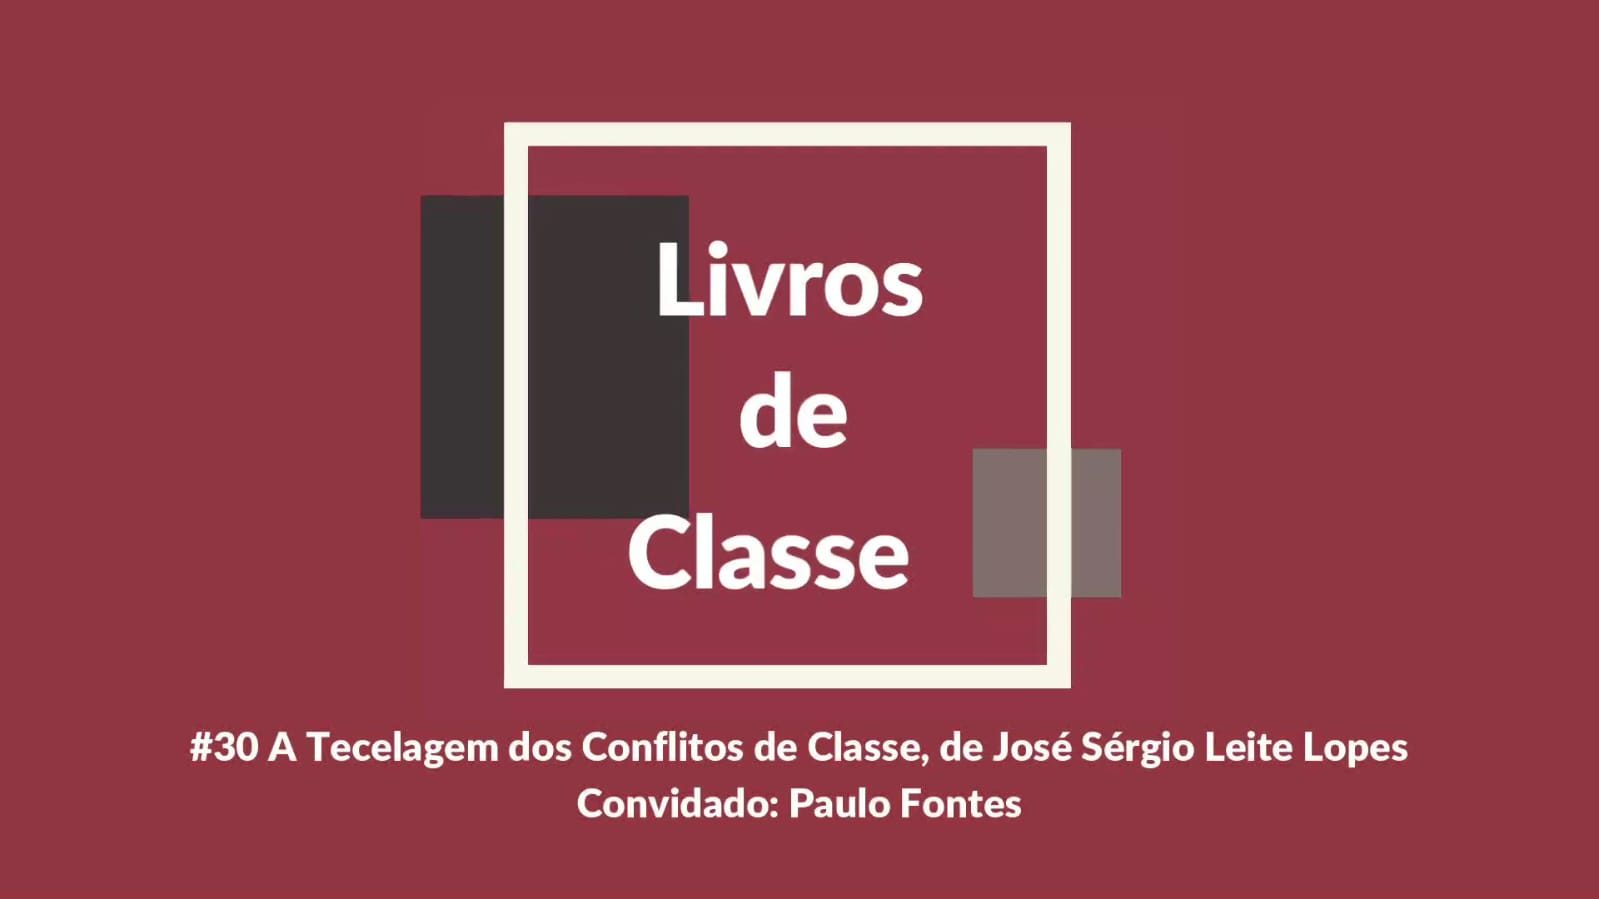 Livros de Classe #30: A Tecelagem dos Conflitos de Classe, de José Sérgio Leite Lopes, por Paulo Fontes